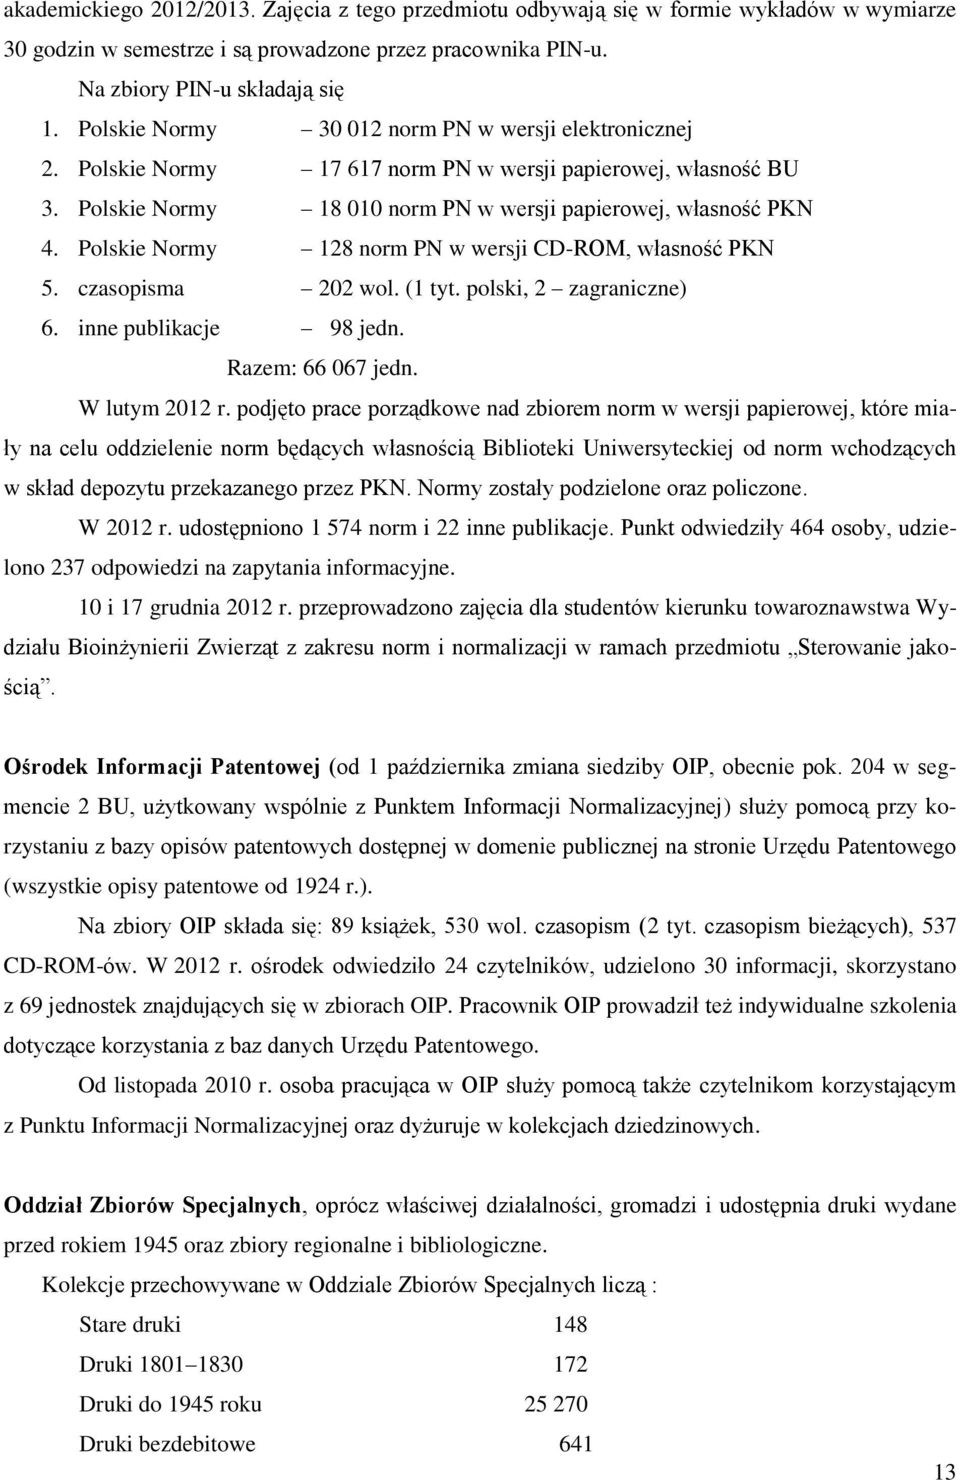 Polskie Normy 128 norm PN w wersji CD-ROM, własność PKN 5. czasopisma 202 wol. (1 tyt. polski, 2 zagraniczne) 6. inne publikacje 98 jedn. Razem: 66 067 jedn. W lutym 2012 r.